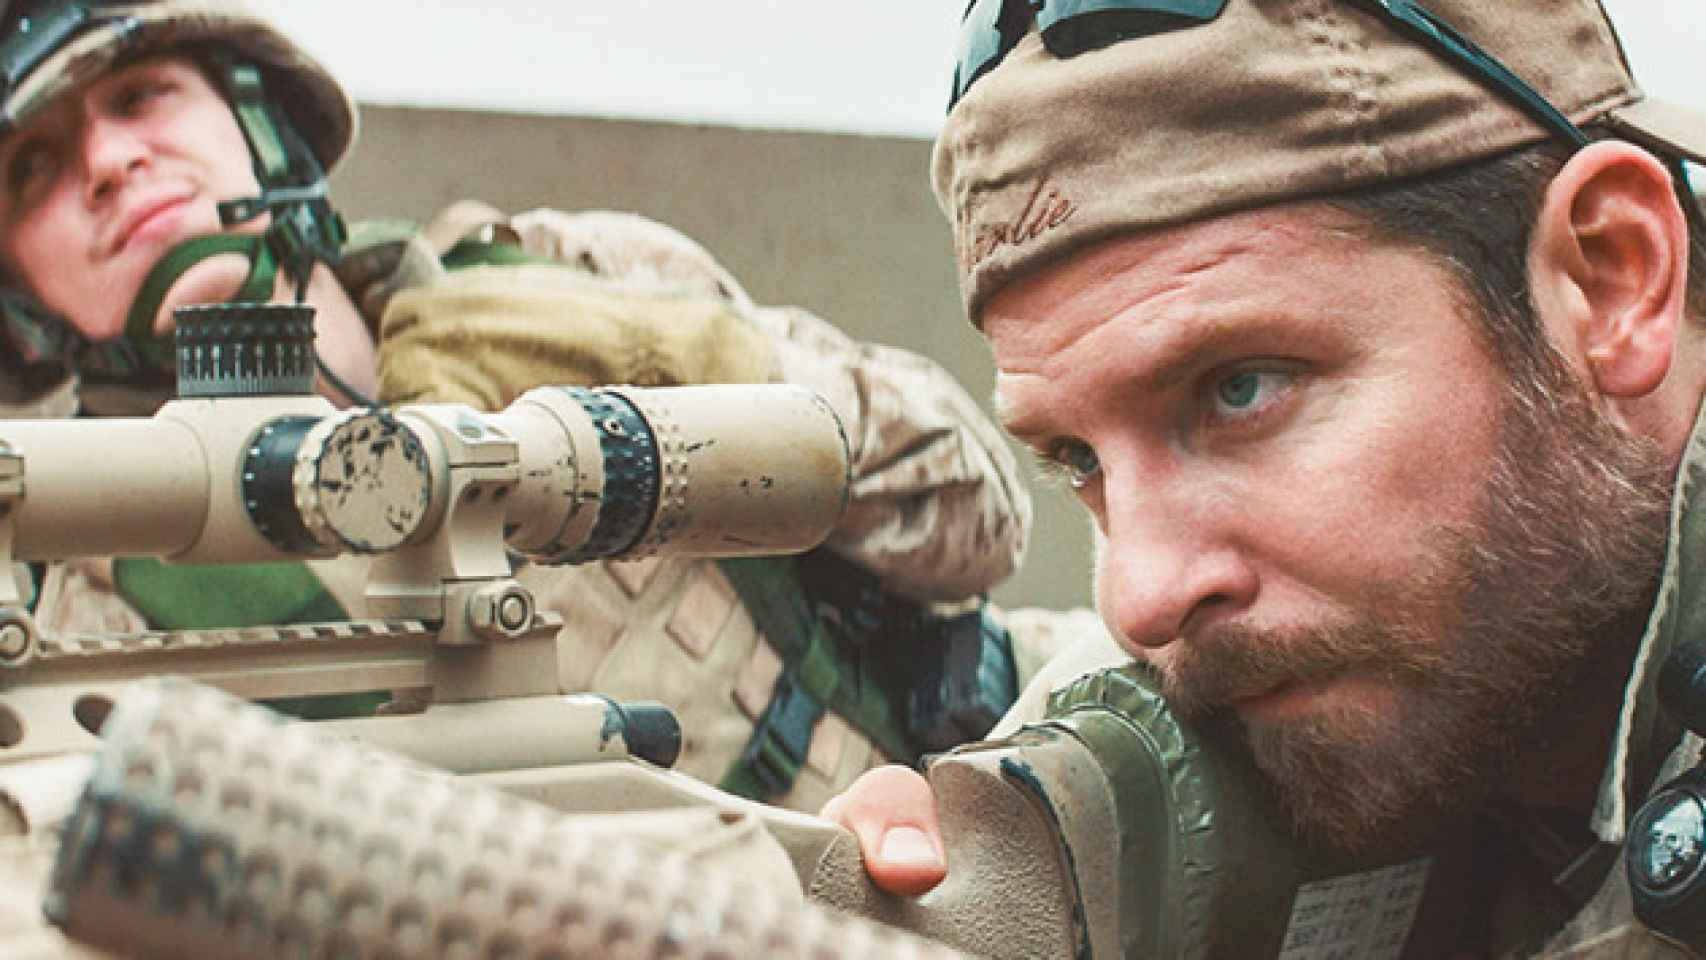 Bradley Cooper en 'El francotirador'